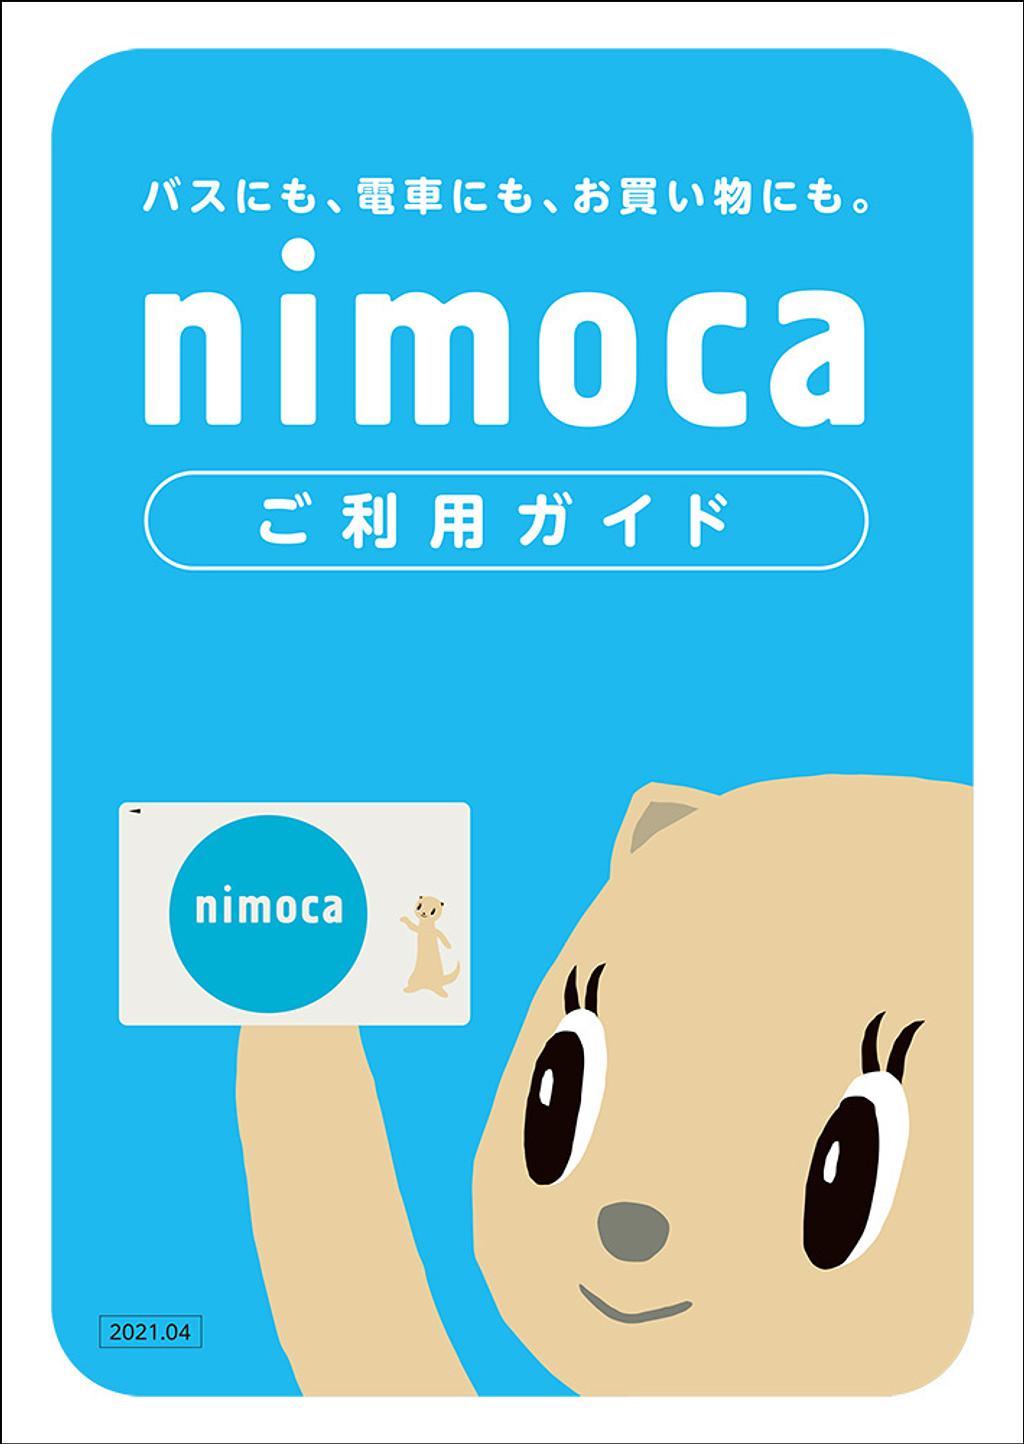 交通系ICカード｢ICAS nimoca｣ | お得なチケット・便利なサービス 